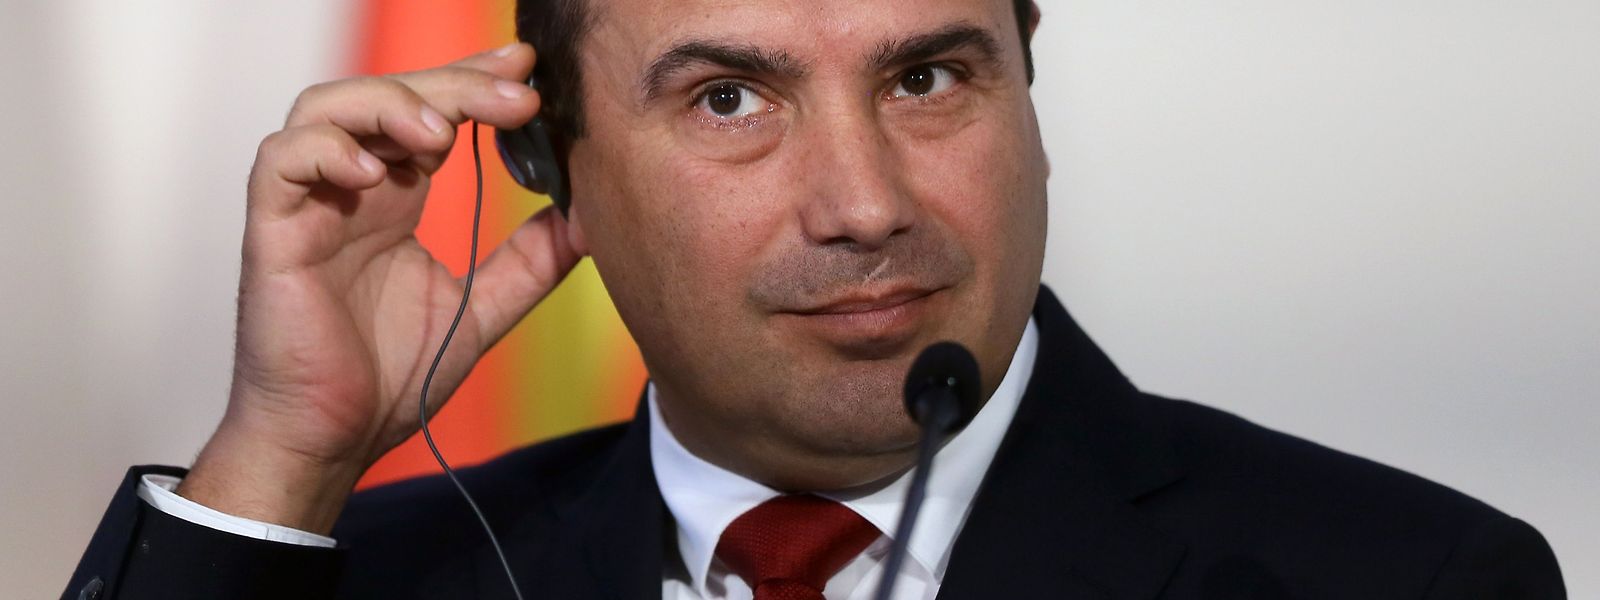 Der Sozialdemokrat Zoran Zaev (46) gilt als einer der wenigen resoluten Reformer auf dem Westbalkan.